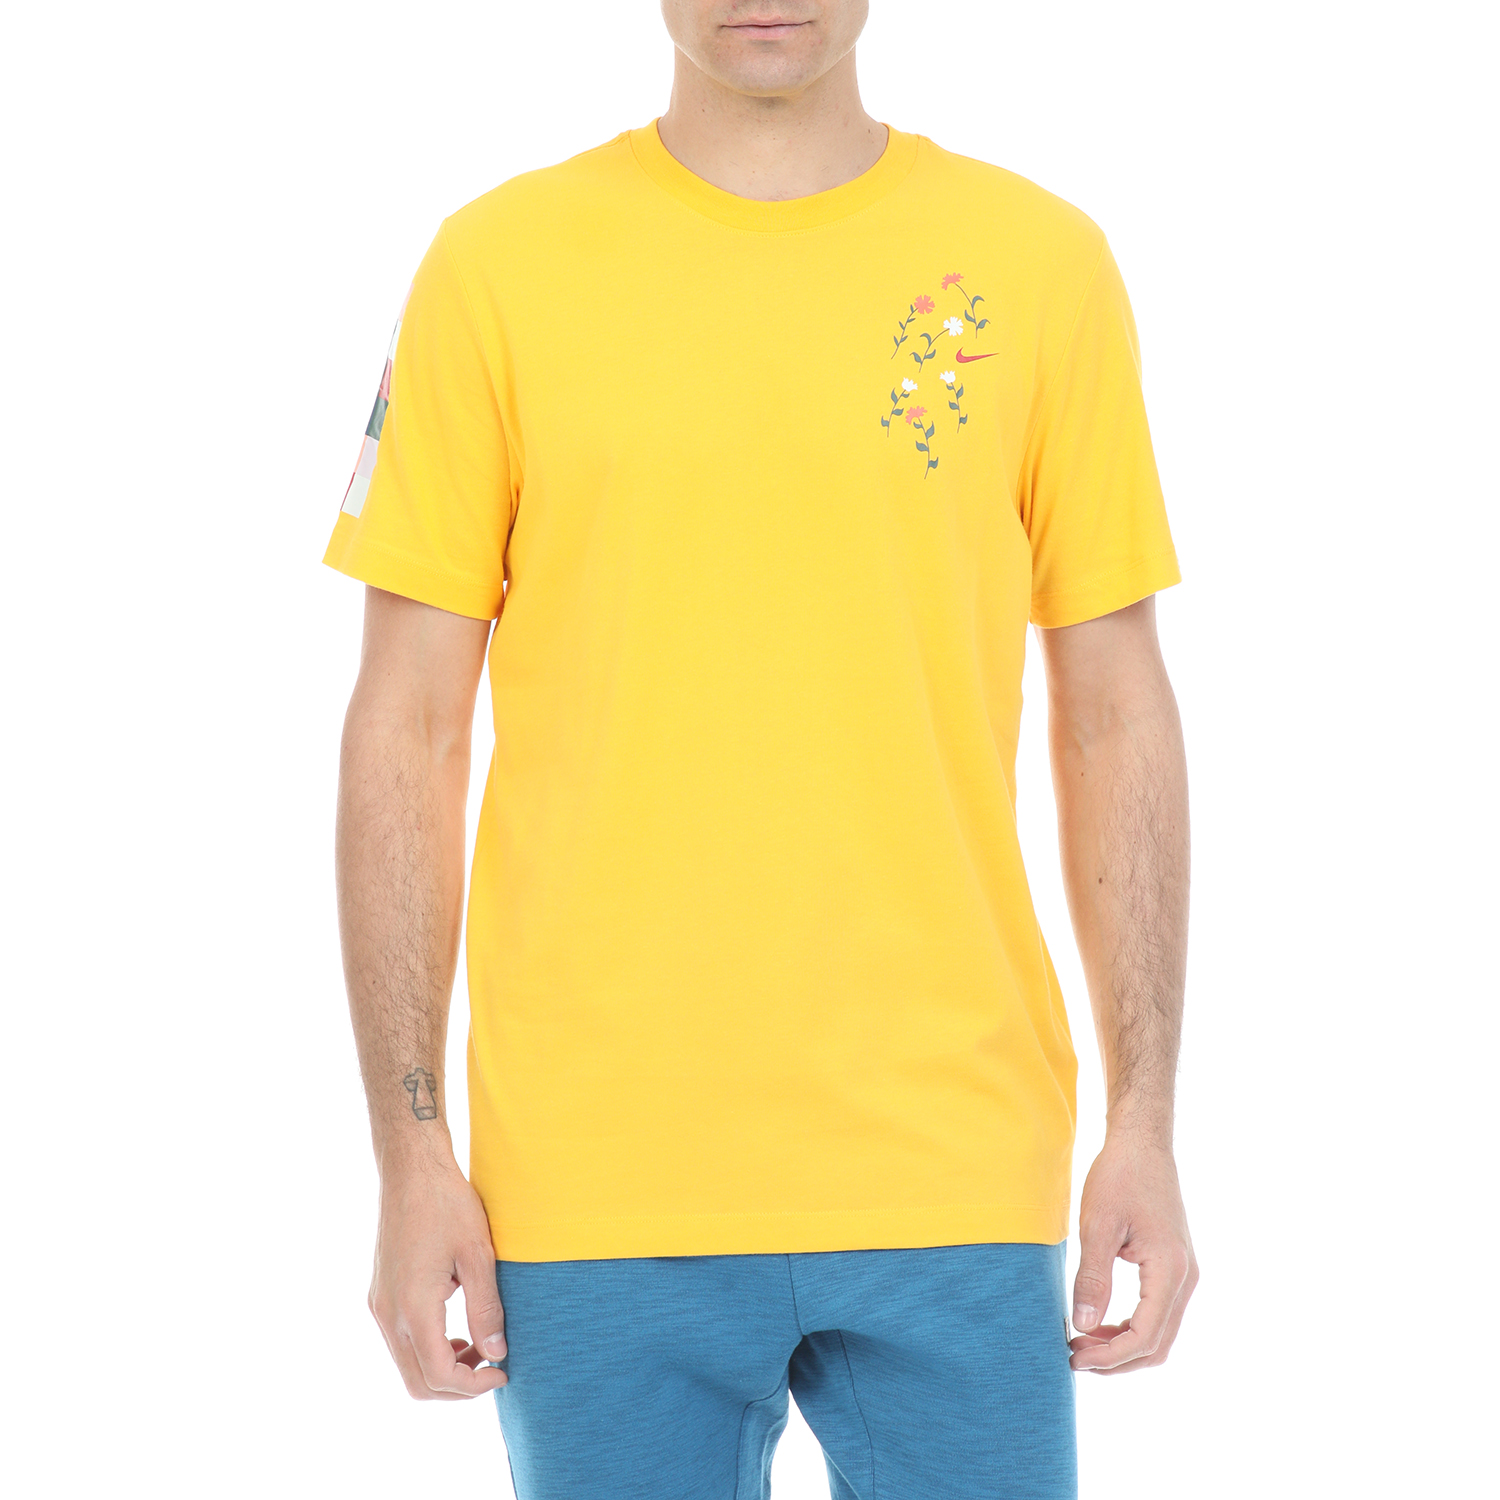 Ανδρικά/Ρούχα/Αθλητικά/T-shirt NIKE - Ανδρικό t-shirt NIKE DRY TEE A.I.R. A SAVAGE κίτρινο